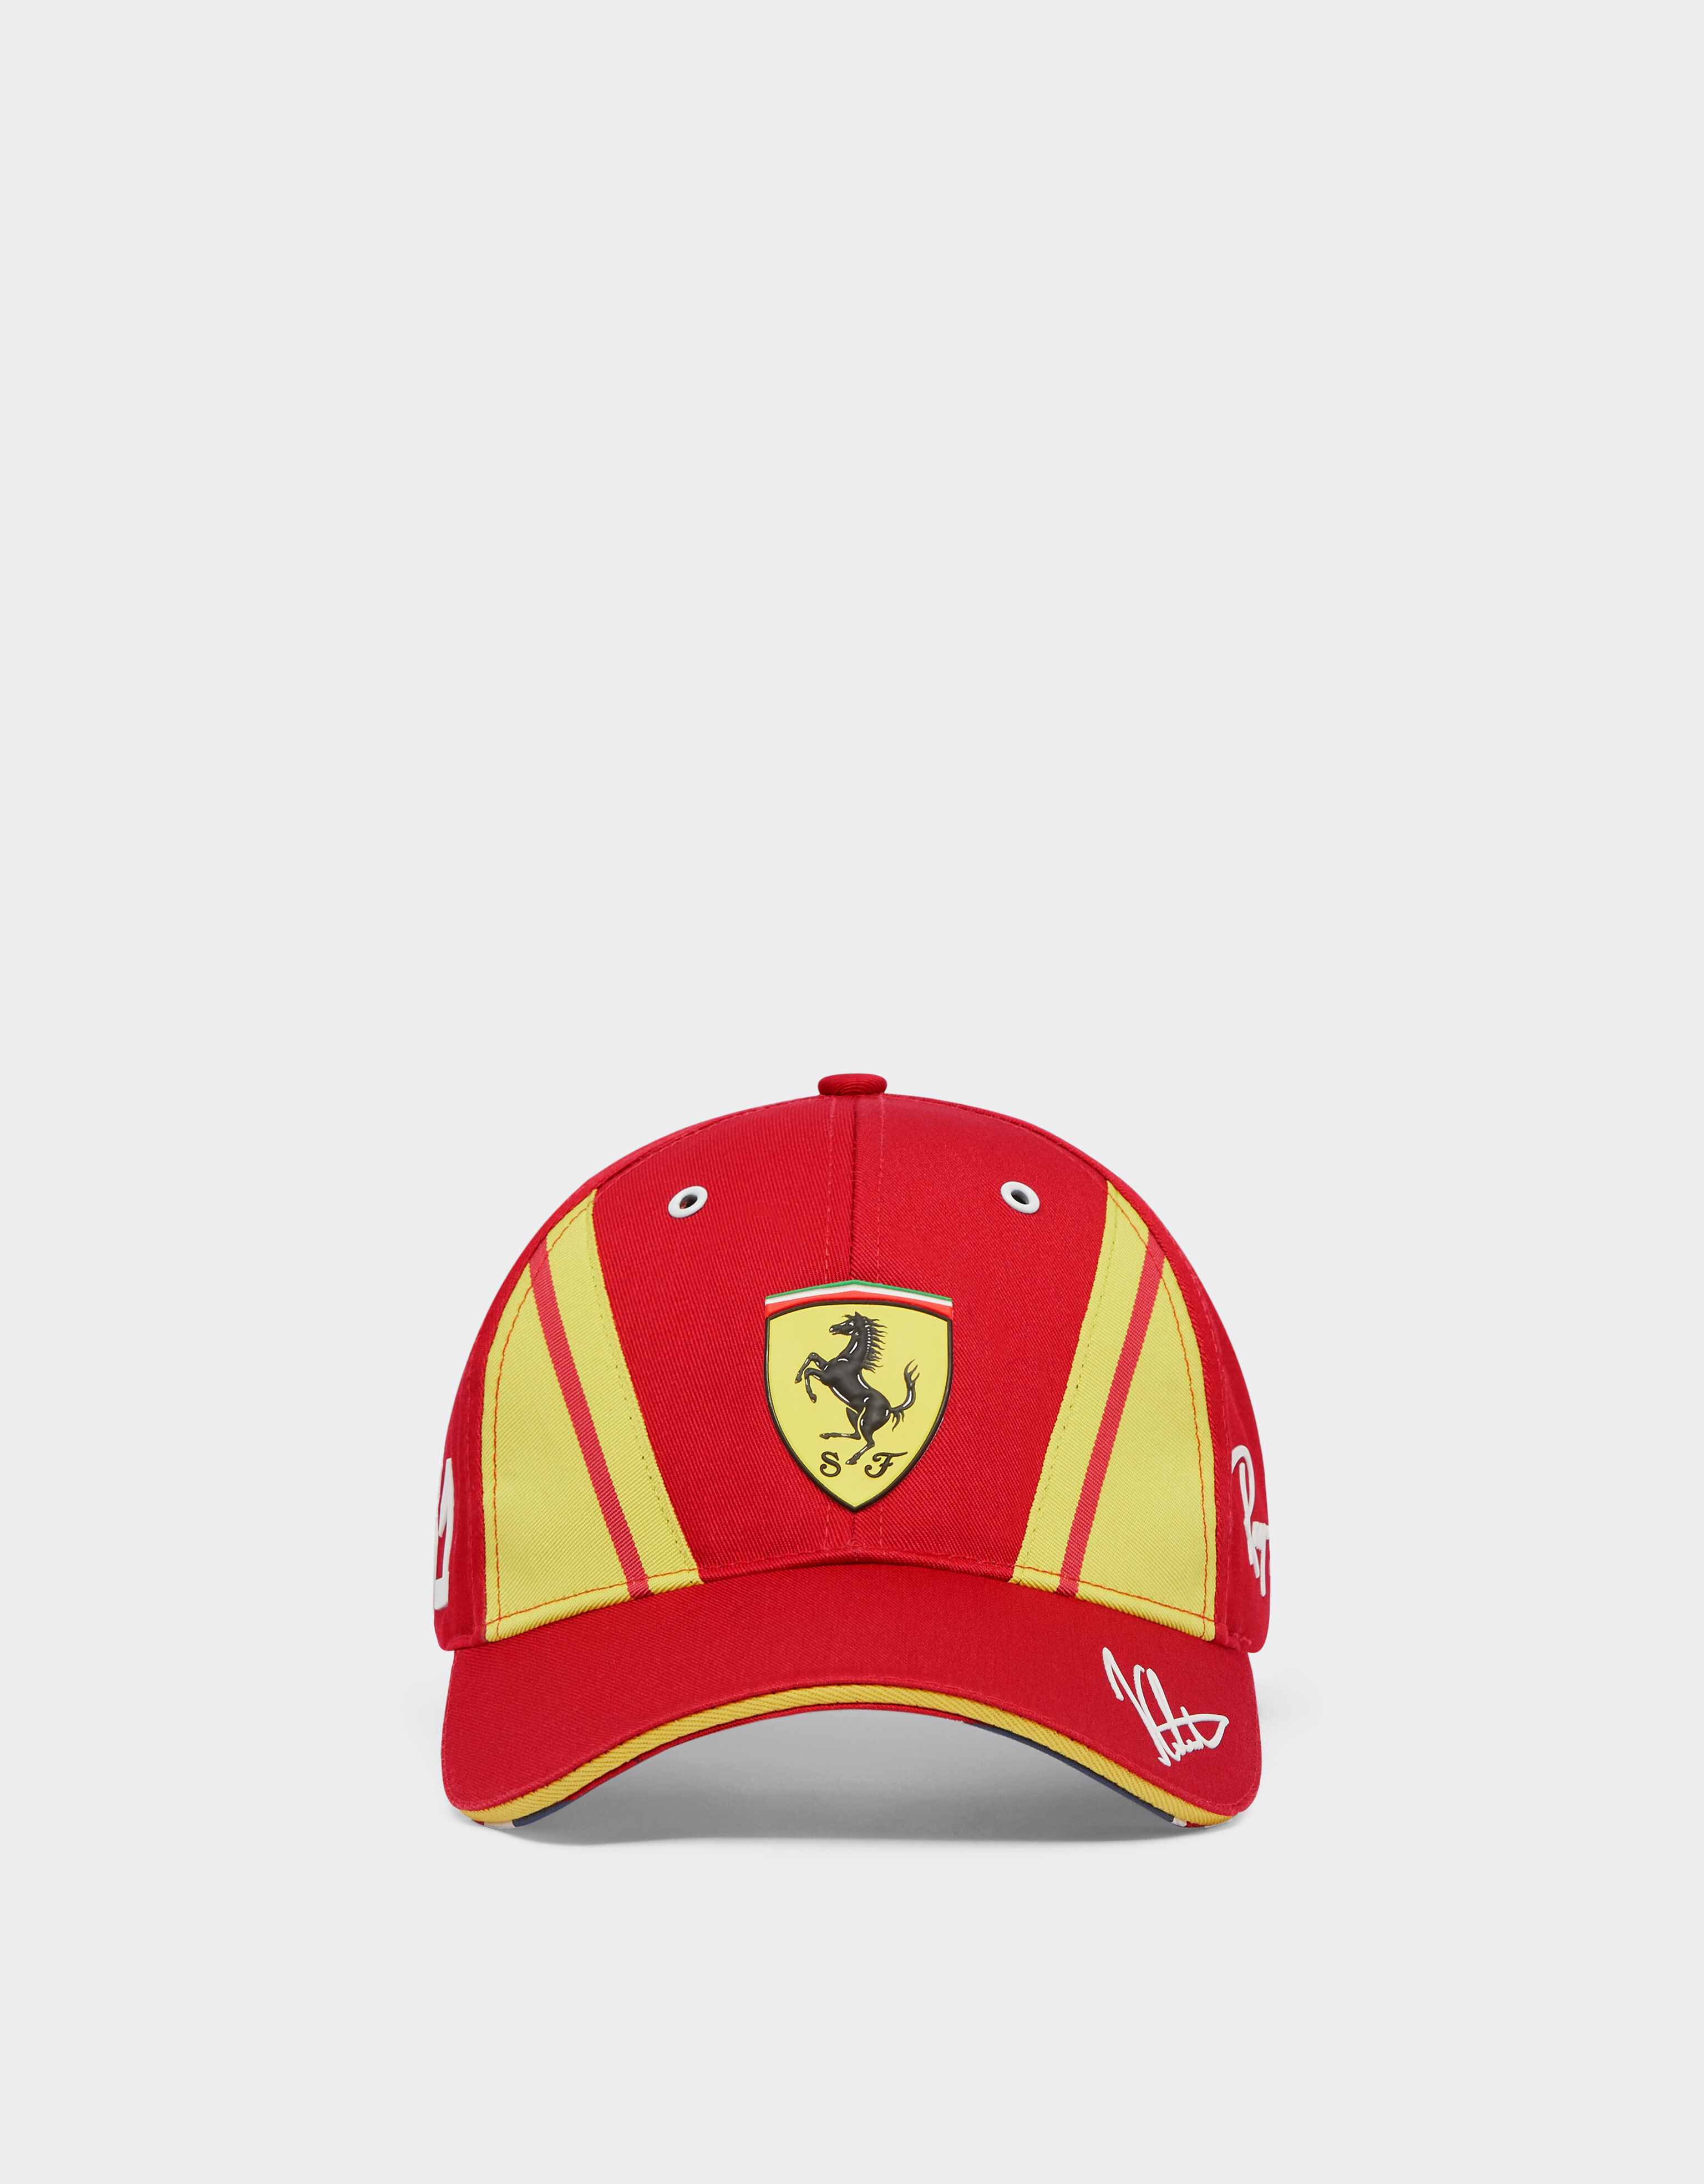 ${brand} Calado Ferrari Hypercar Baseballcap - Limited Edition ${colorDescription} ${masterID}